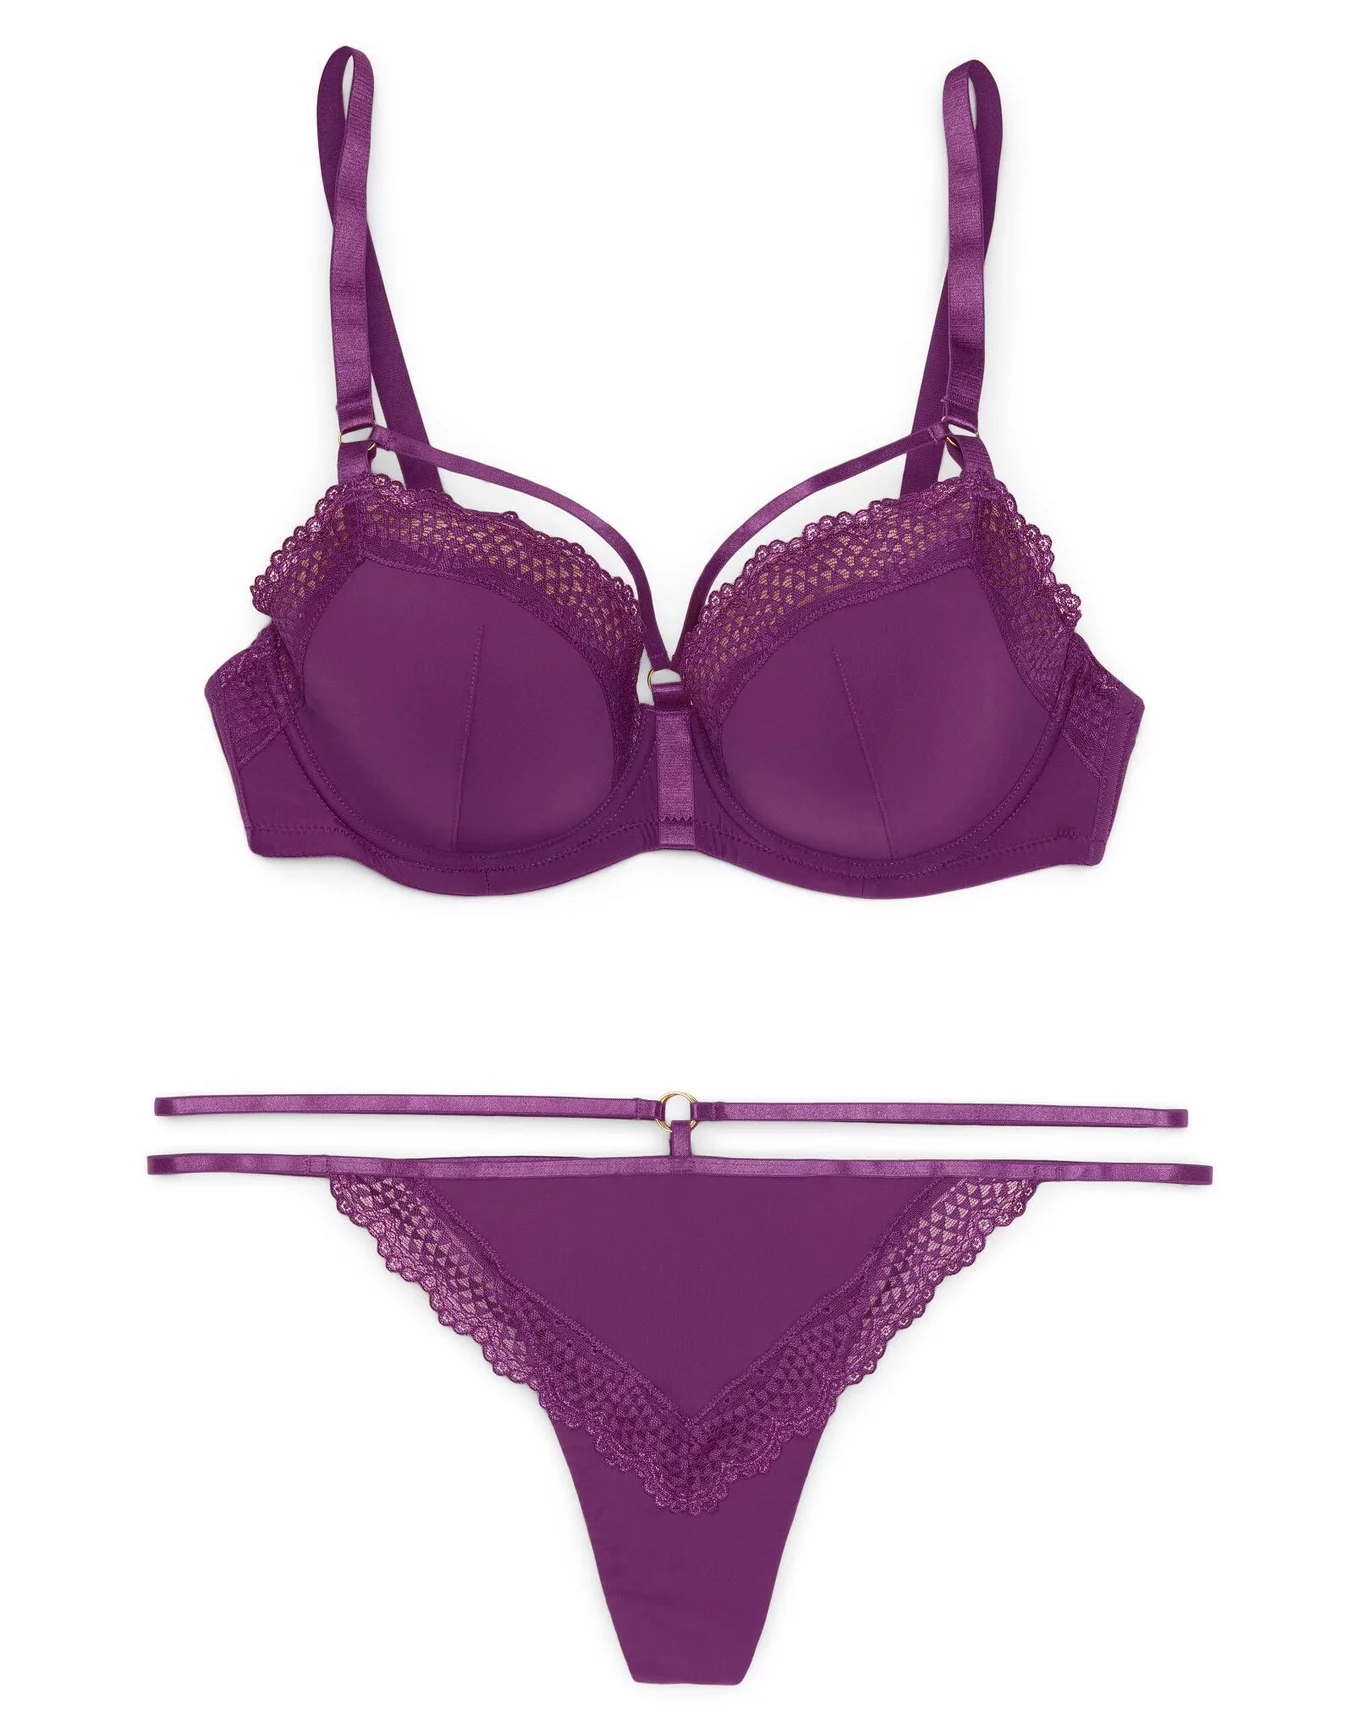 venus purple lace back panty – Our Bralette Club